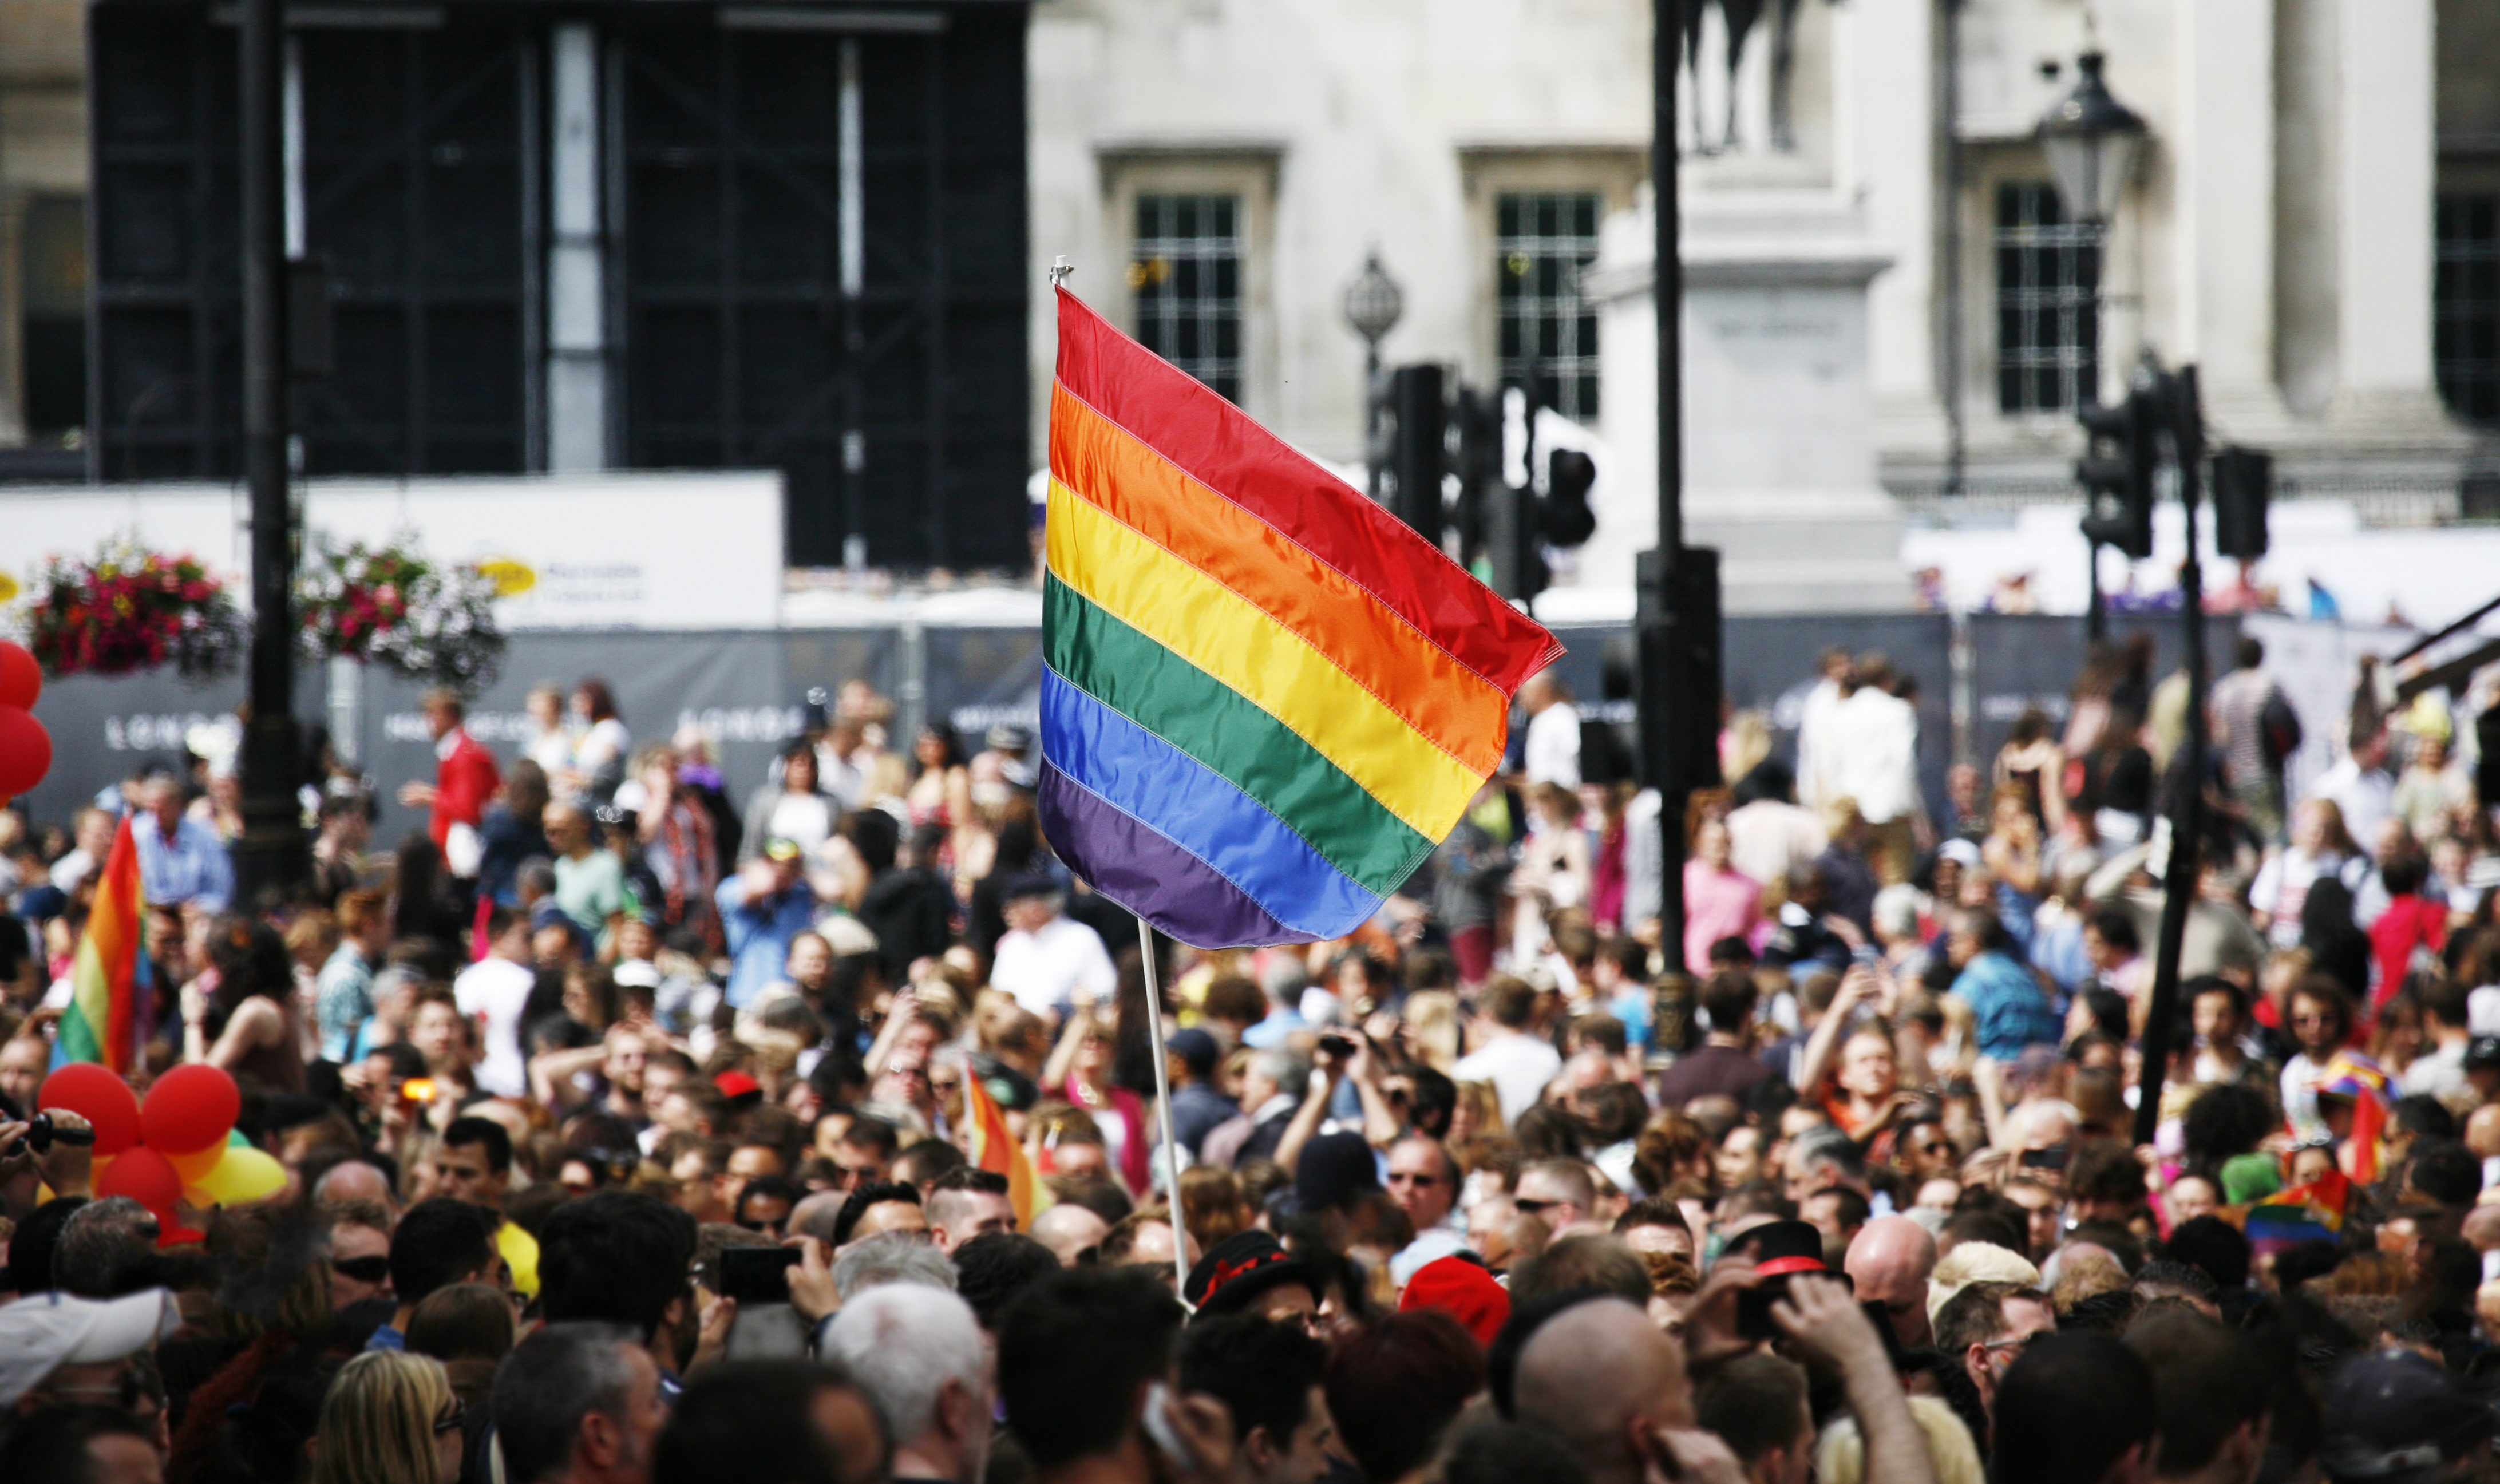  Fransa’dan Tarihi Karar: Eşcinsel Çiftlerin Eşit Haklara Sahip Olması İçin Artık Anne-Baba Yerine, Ebeveyn 1 ve Ebeveyn 2 Kullanılacak!